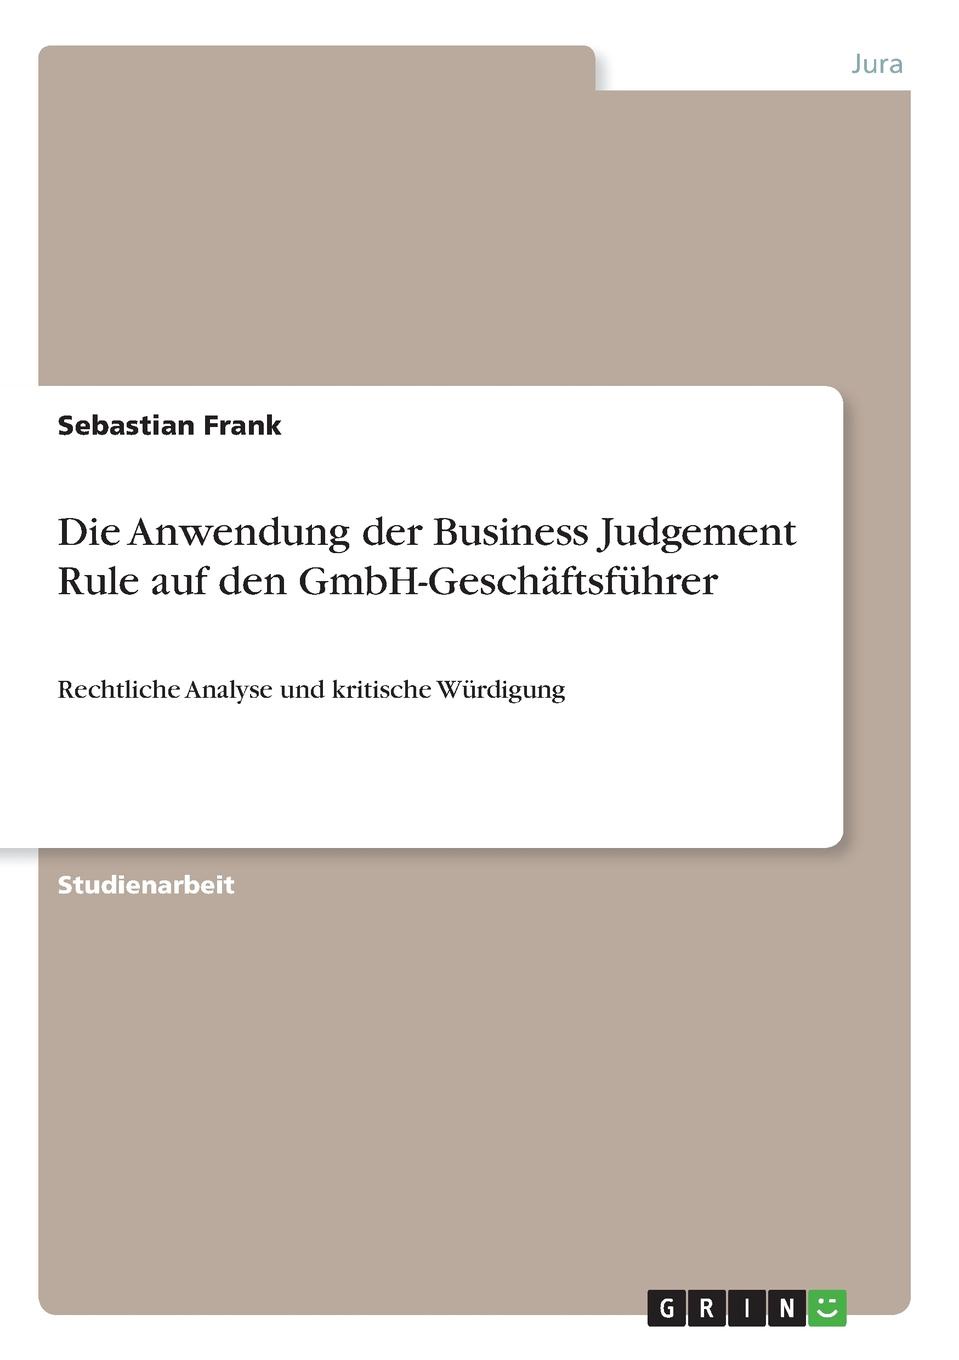 Die Anwendung der Business Judgement Rule auf den GmbH-Geschaftsfuhrer